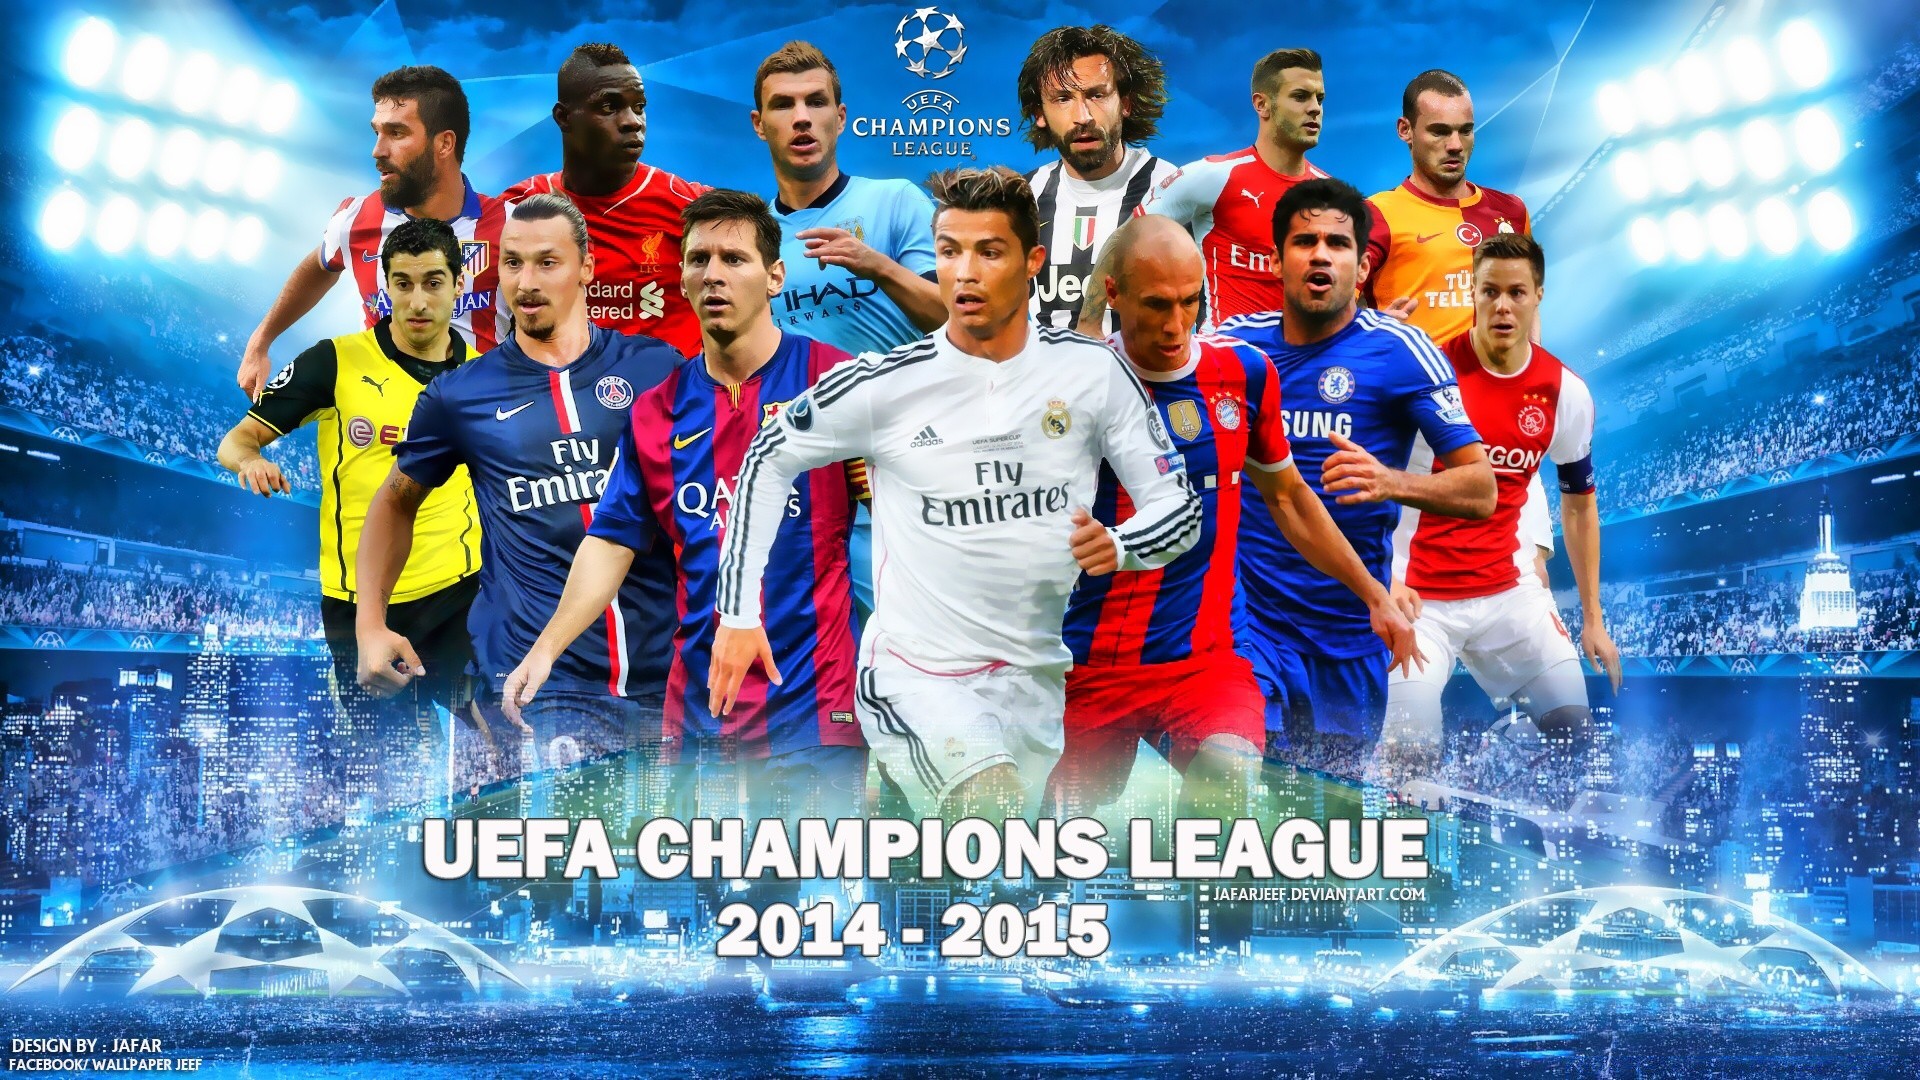 Футбол лига группа 4. Лига чемпионов. Футбольная обложка. Обложка футбольной группы. UEFA Champions League футбол.